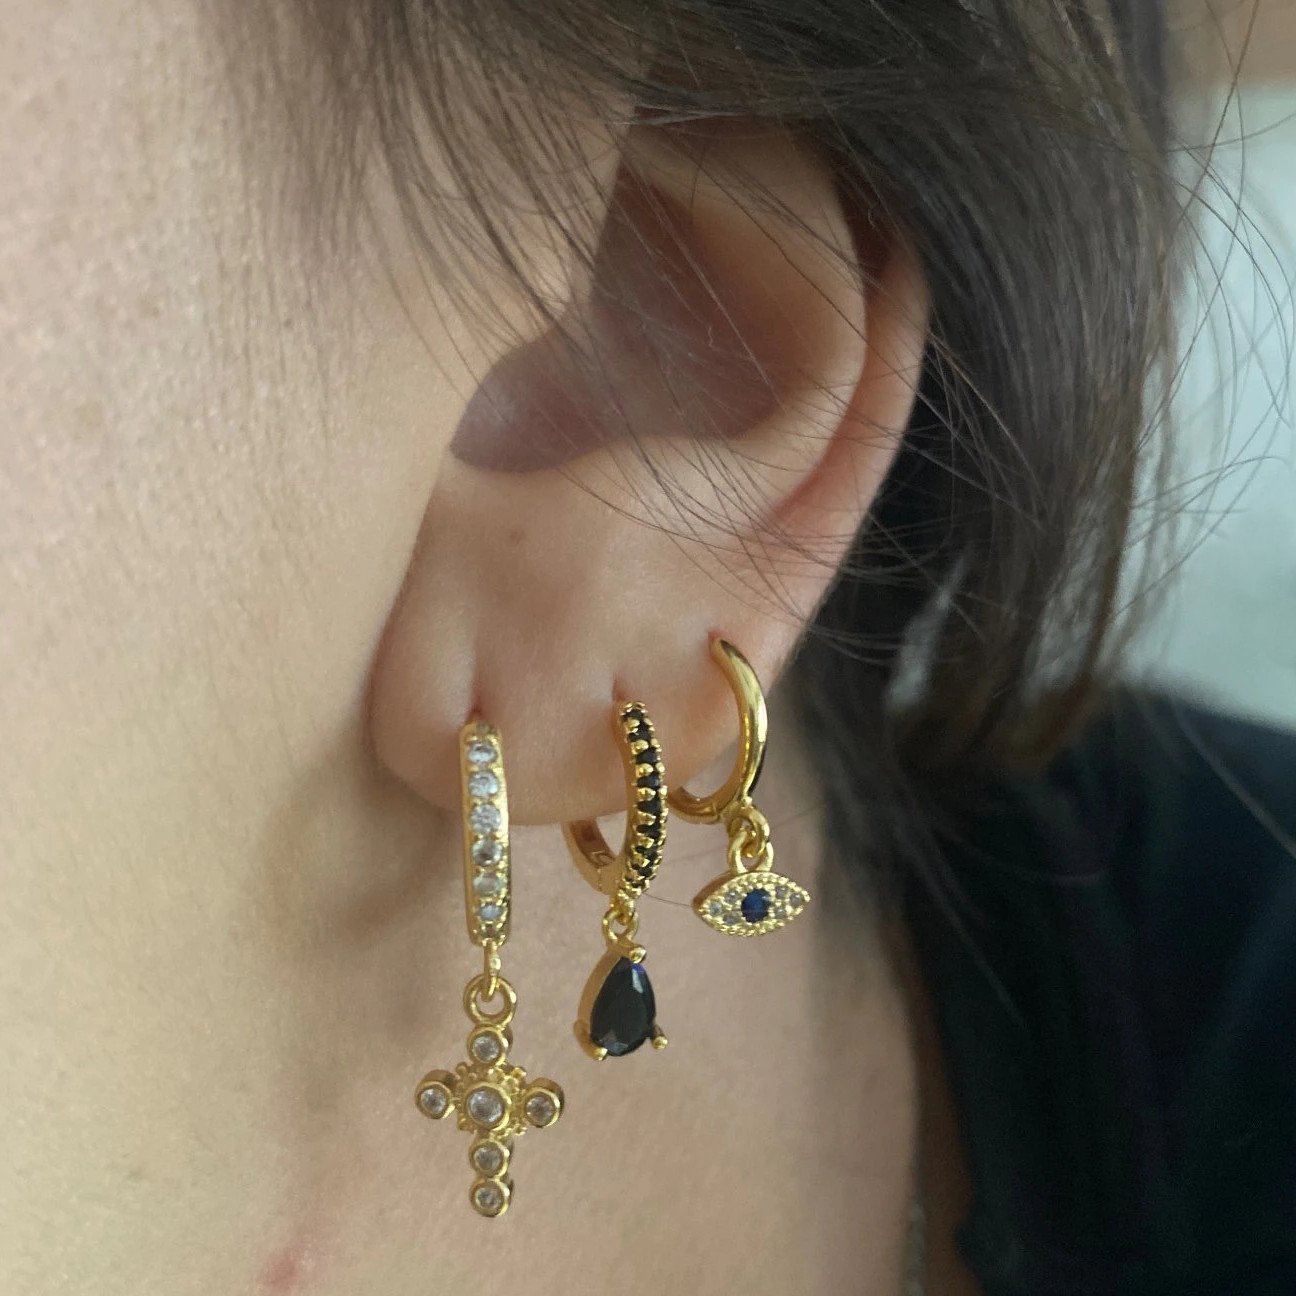 A woman wearing huggie hoop earrings with charms,